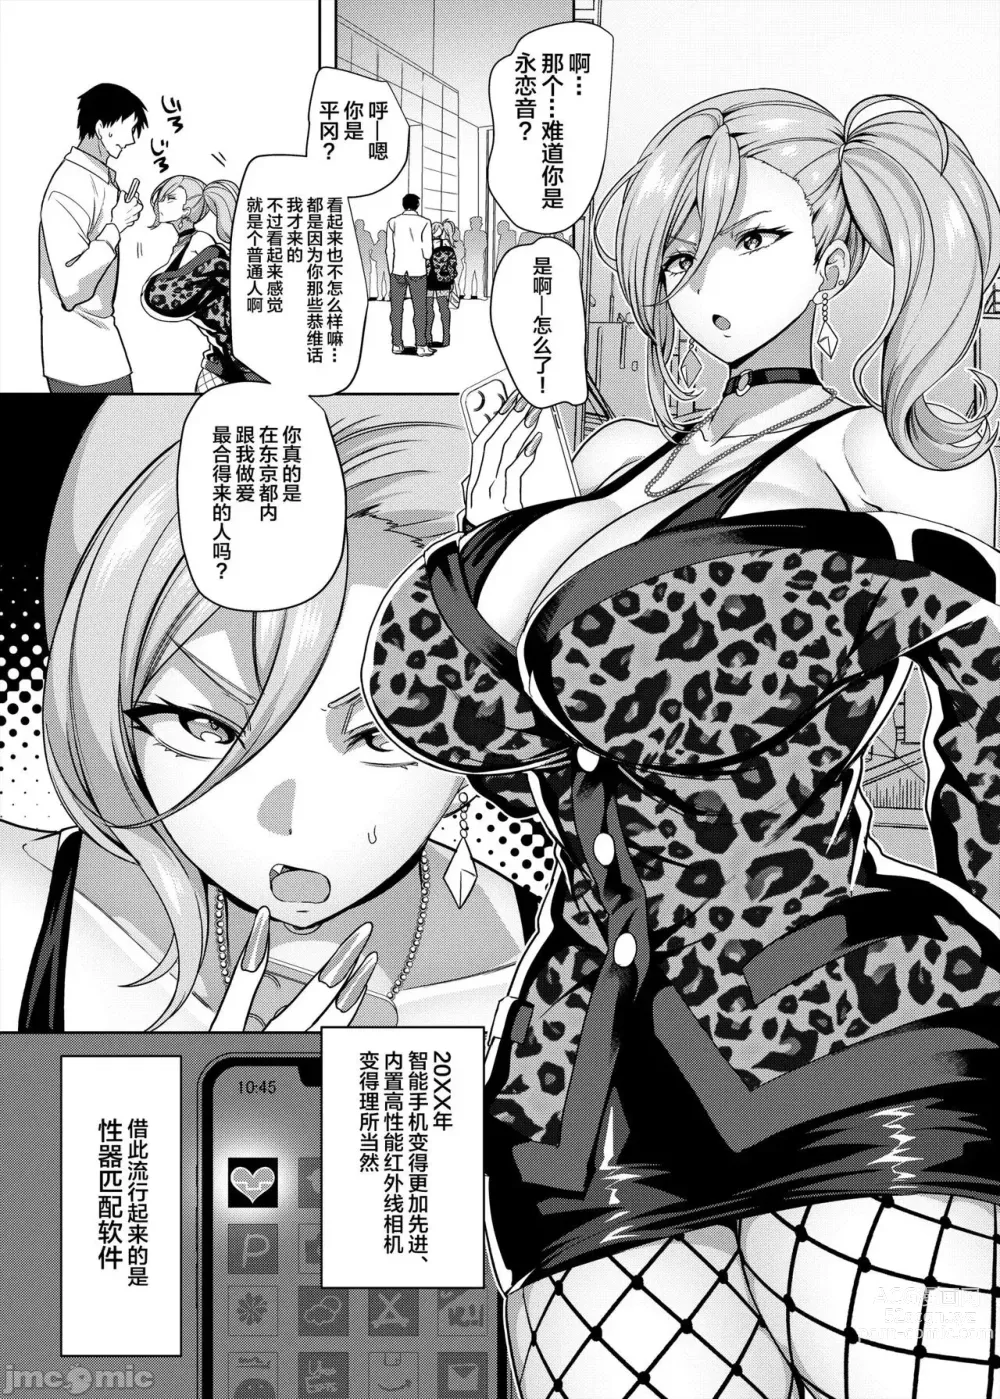 Page 3 of doujinshi 性器マッチングアプリで出会った体の相性だけは最高の女